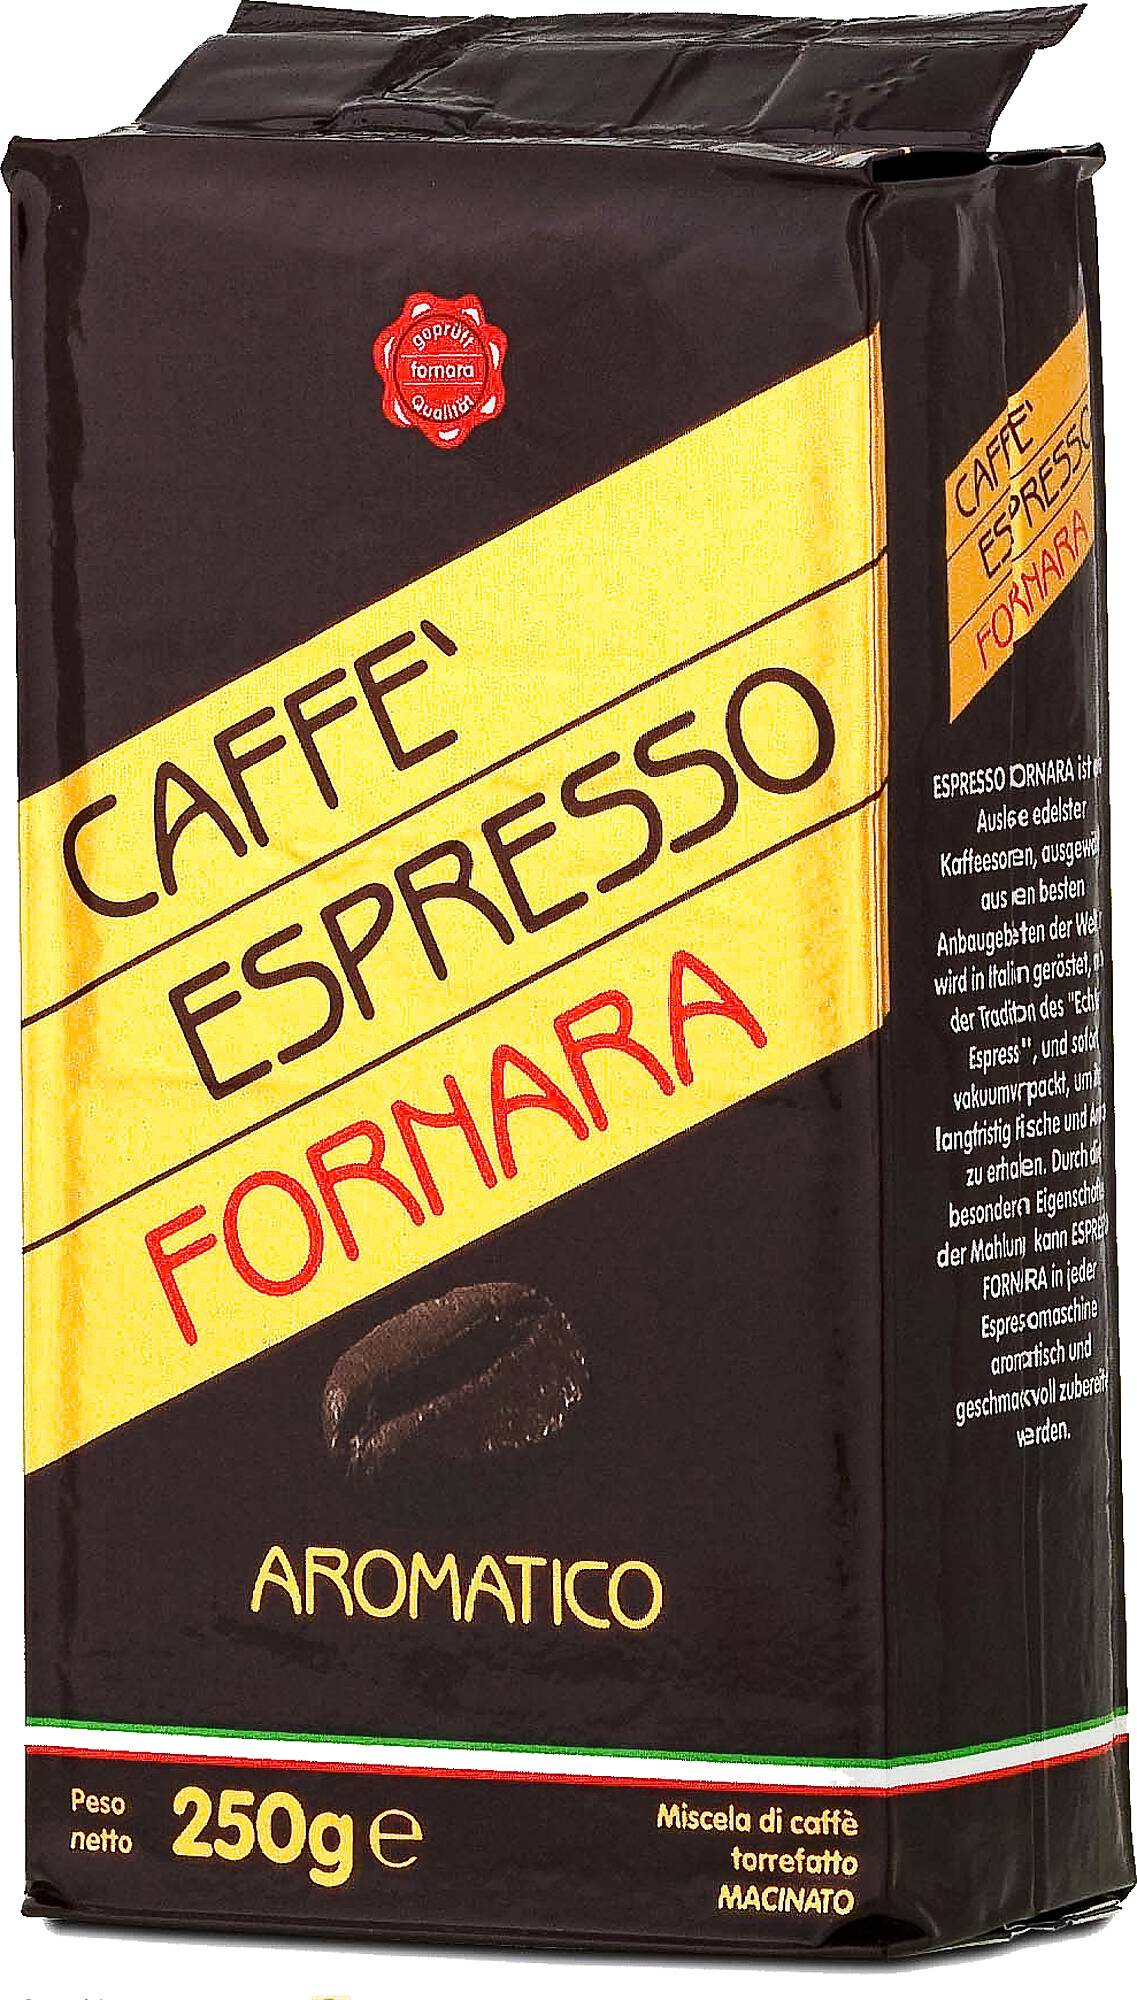 Fornara Caffe Espresso Aromatico gemahlen 250g